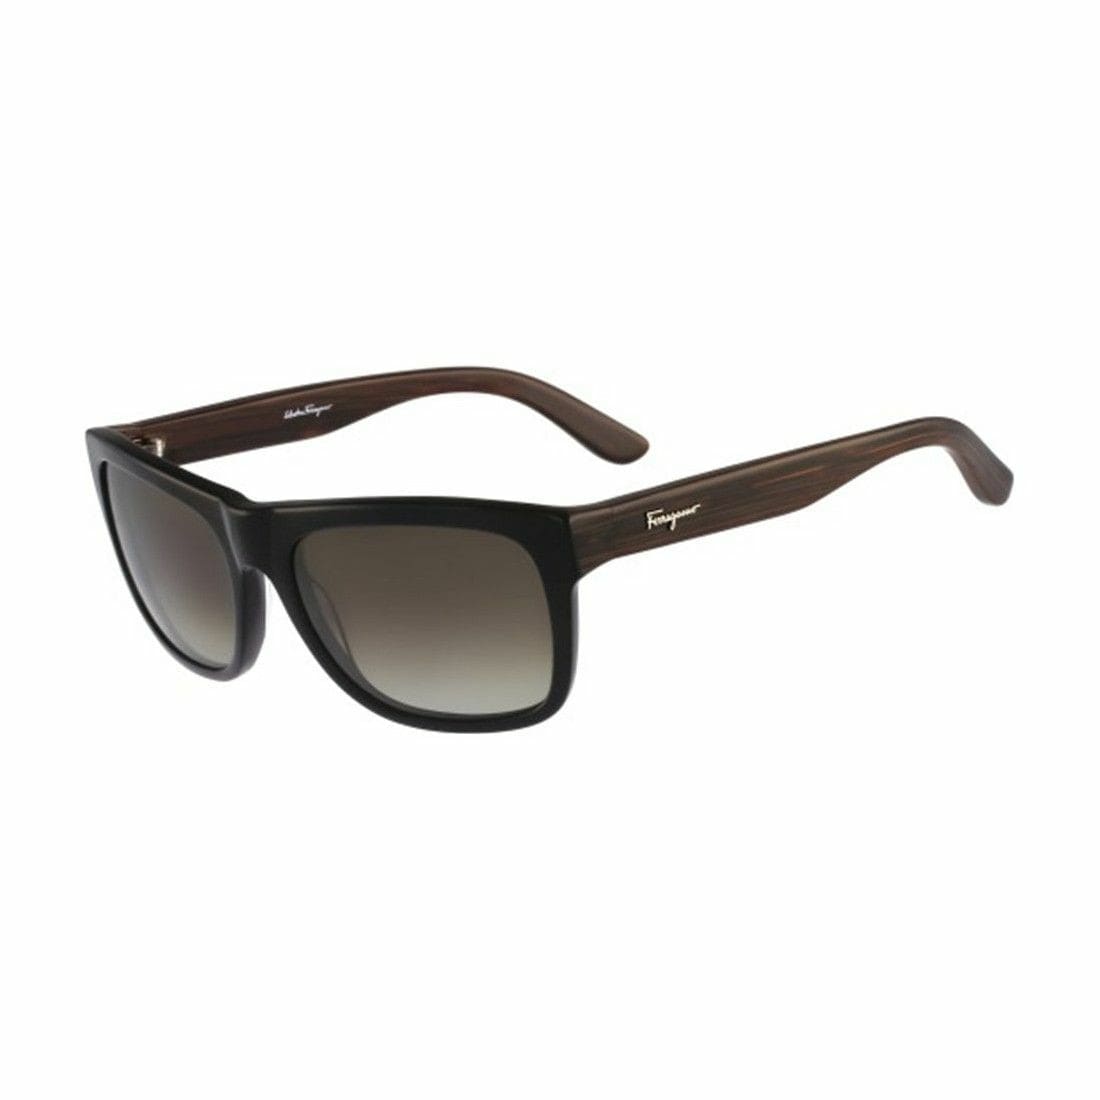 Salvatore Ferragamo SF686S-001 Black Rectangular Gradient Brown Lens Men's Sunglasses 883121937833